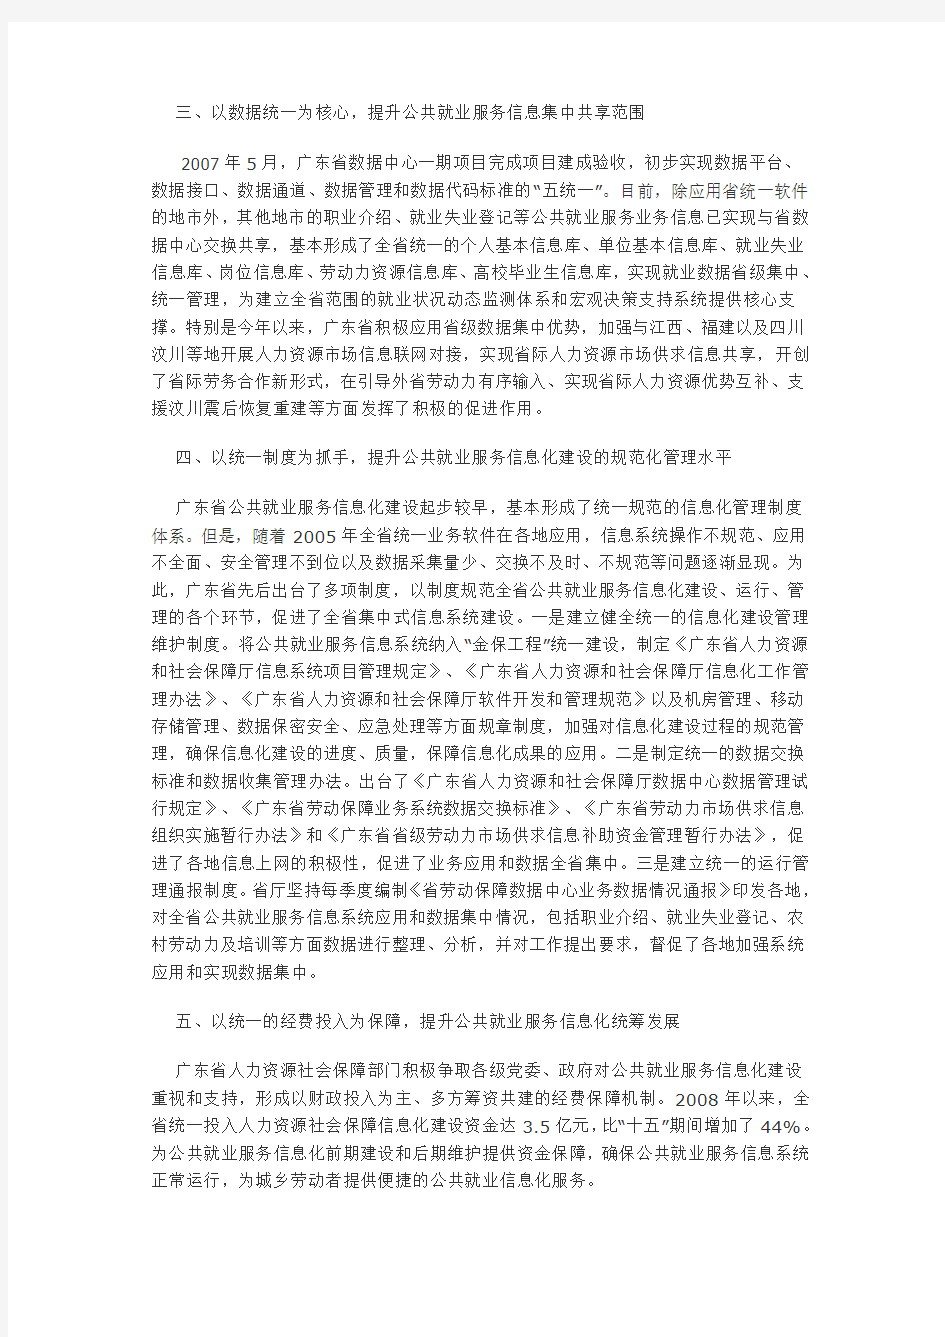 全面推进广东省公共就业服务信息化建设